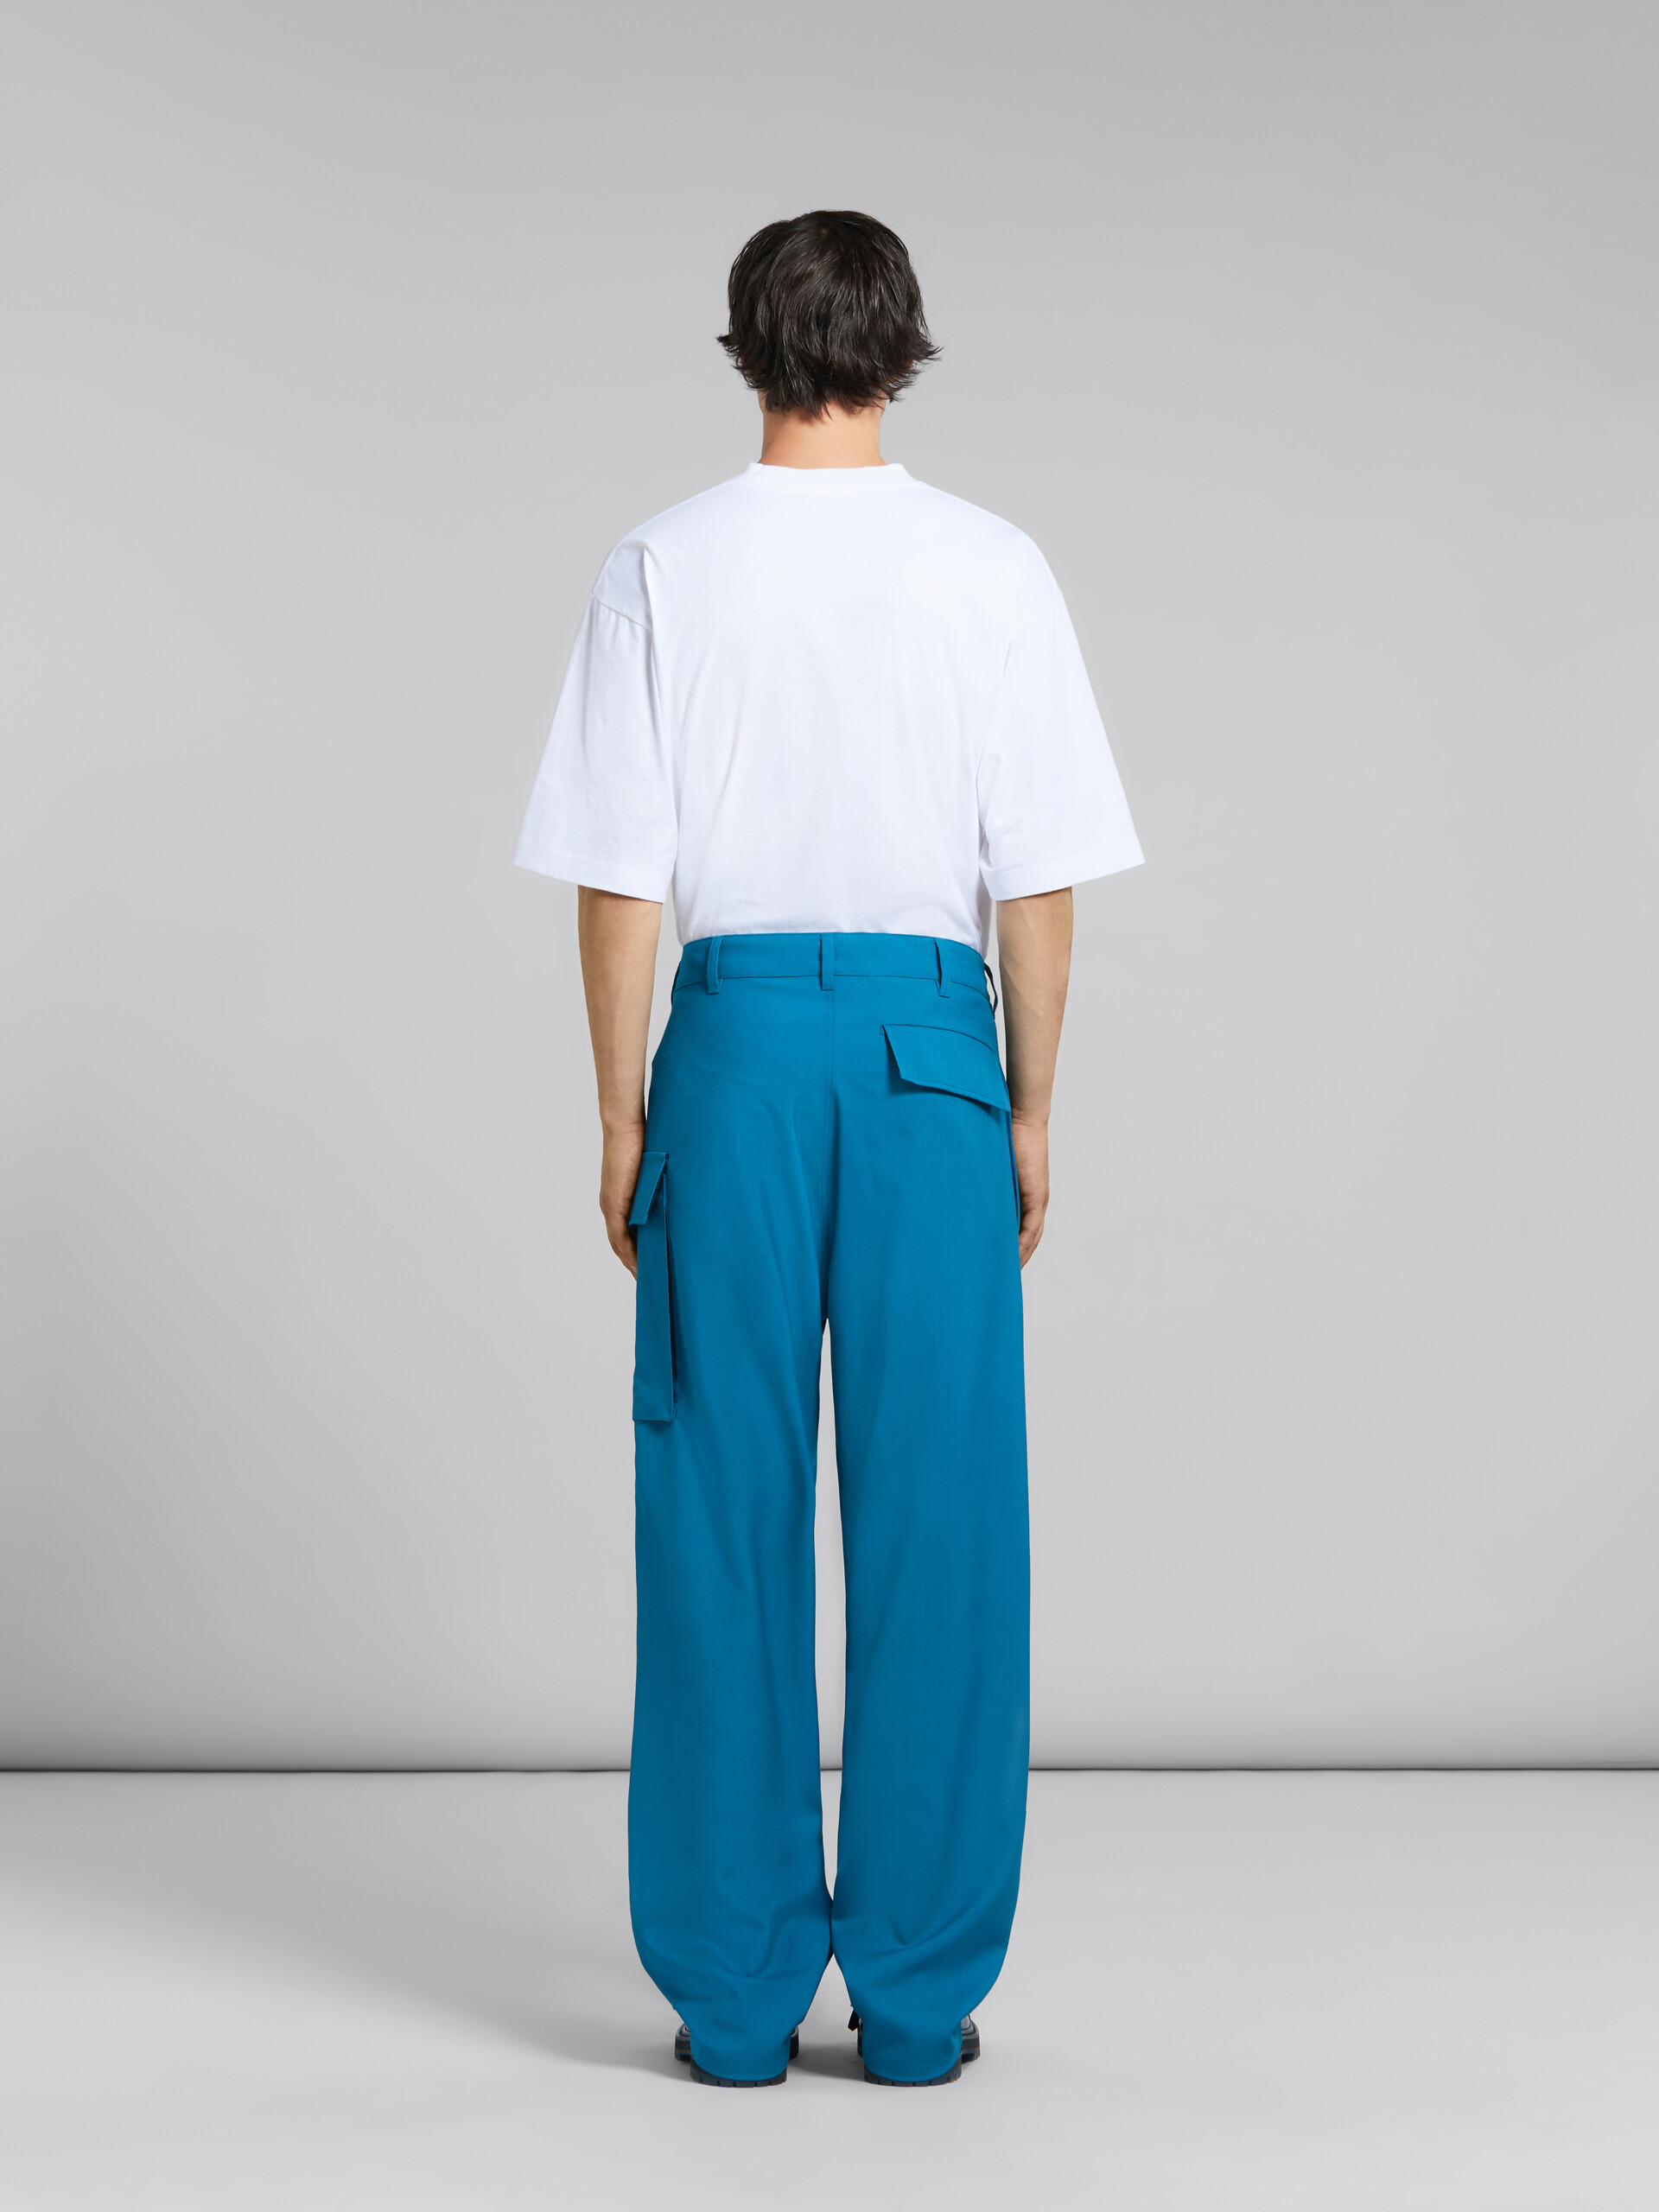 Pantalón de lana tropical verde azulado con bolsillo funcional - Pantalones - Image 3